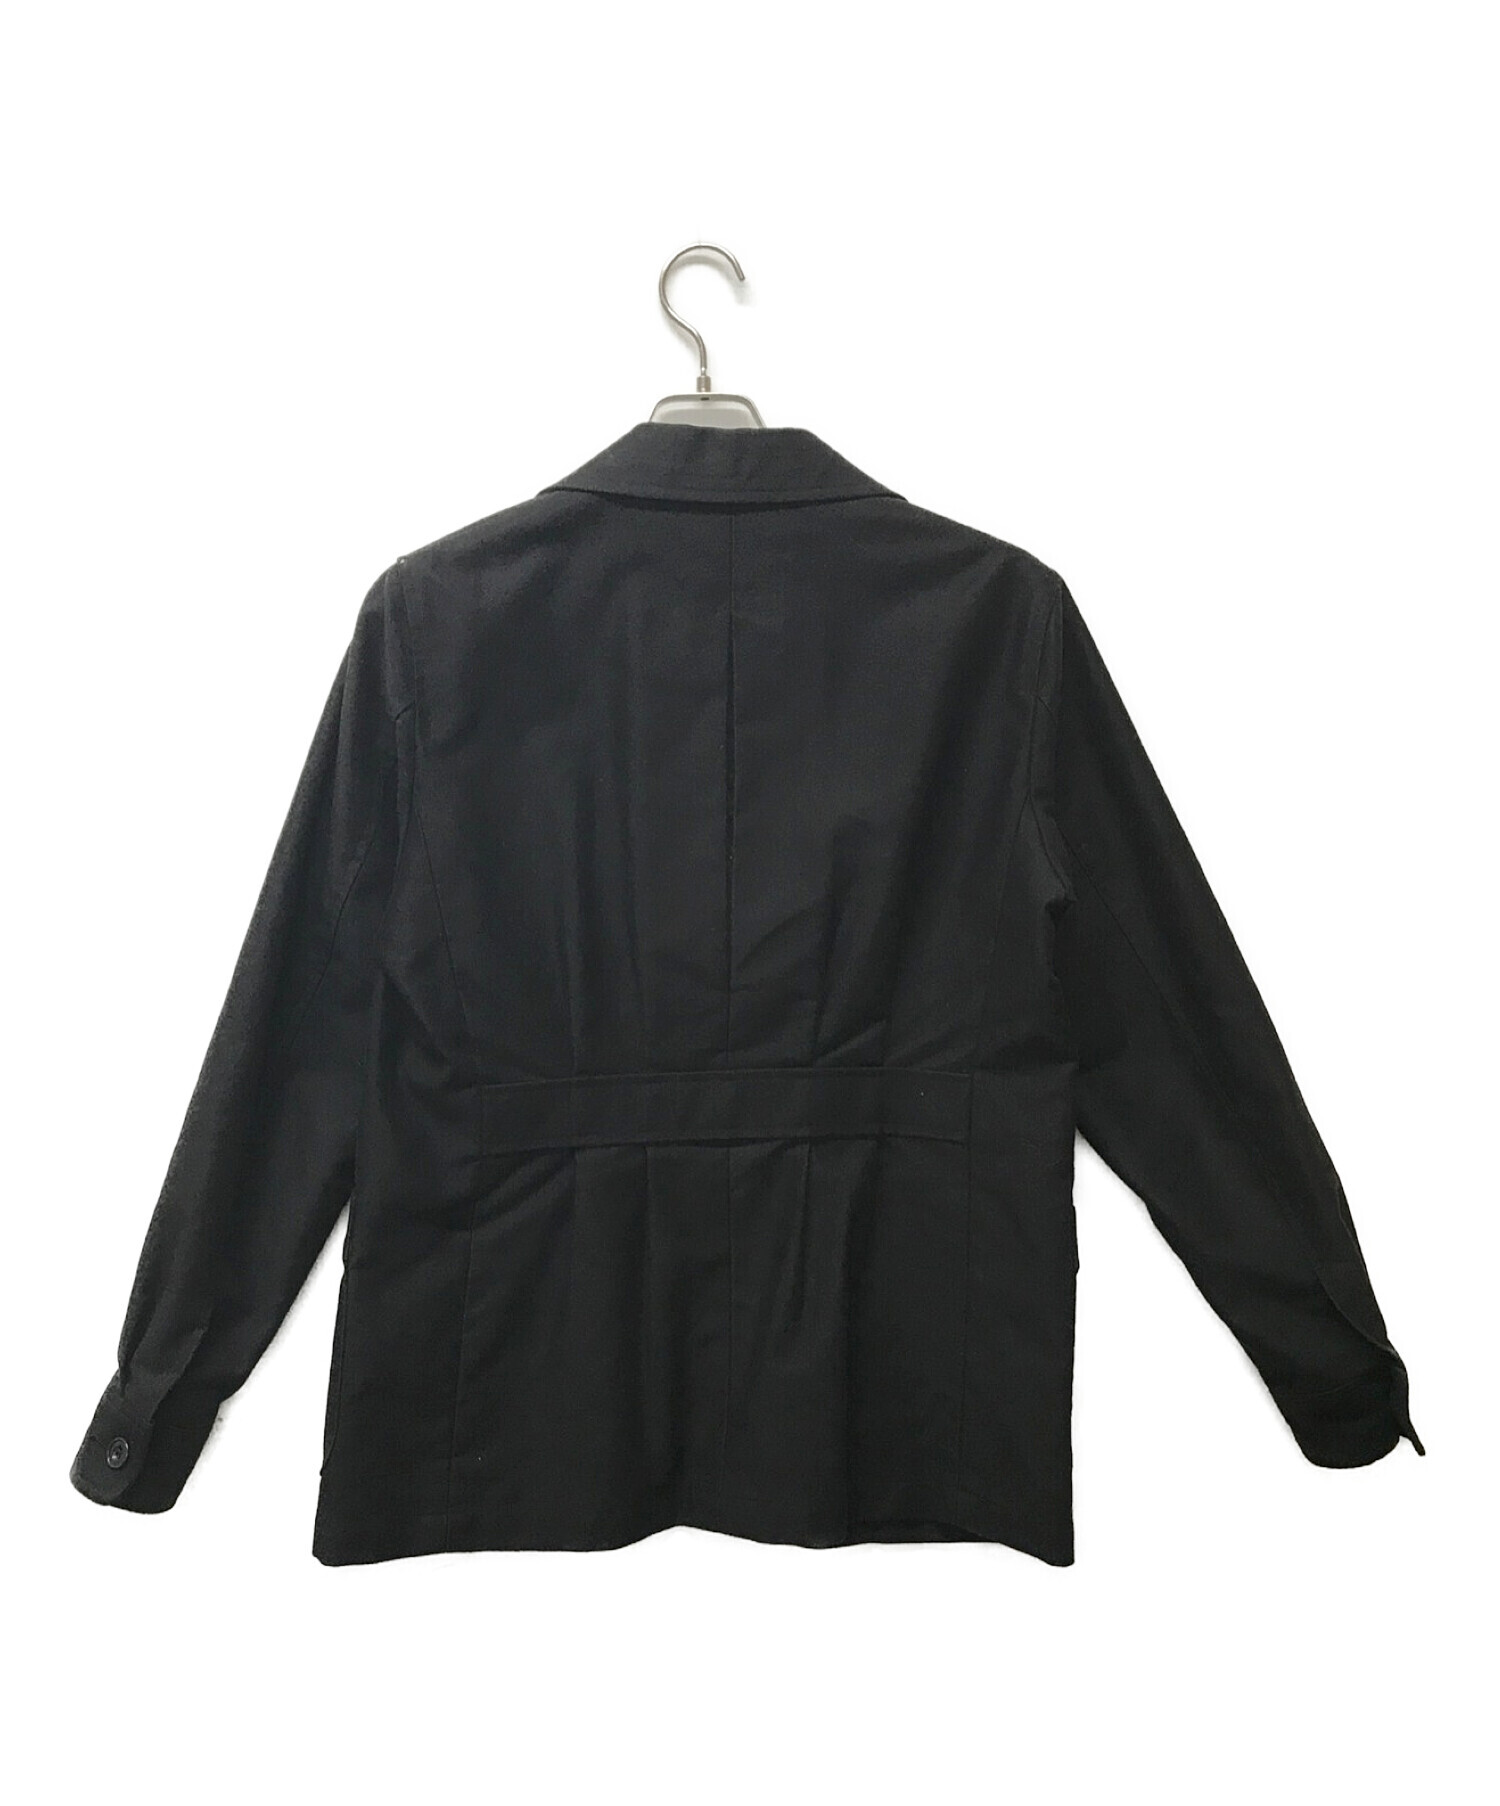 MOJITO (モヒート) モールスキン2Bジャケット ブラック サイズ:M